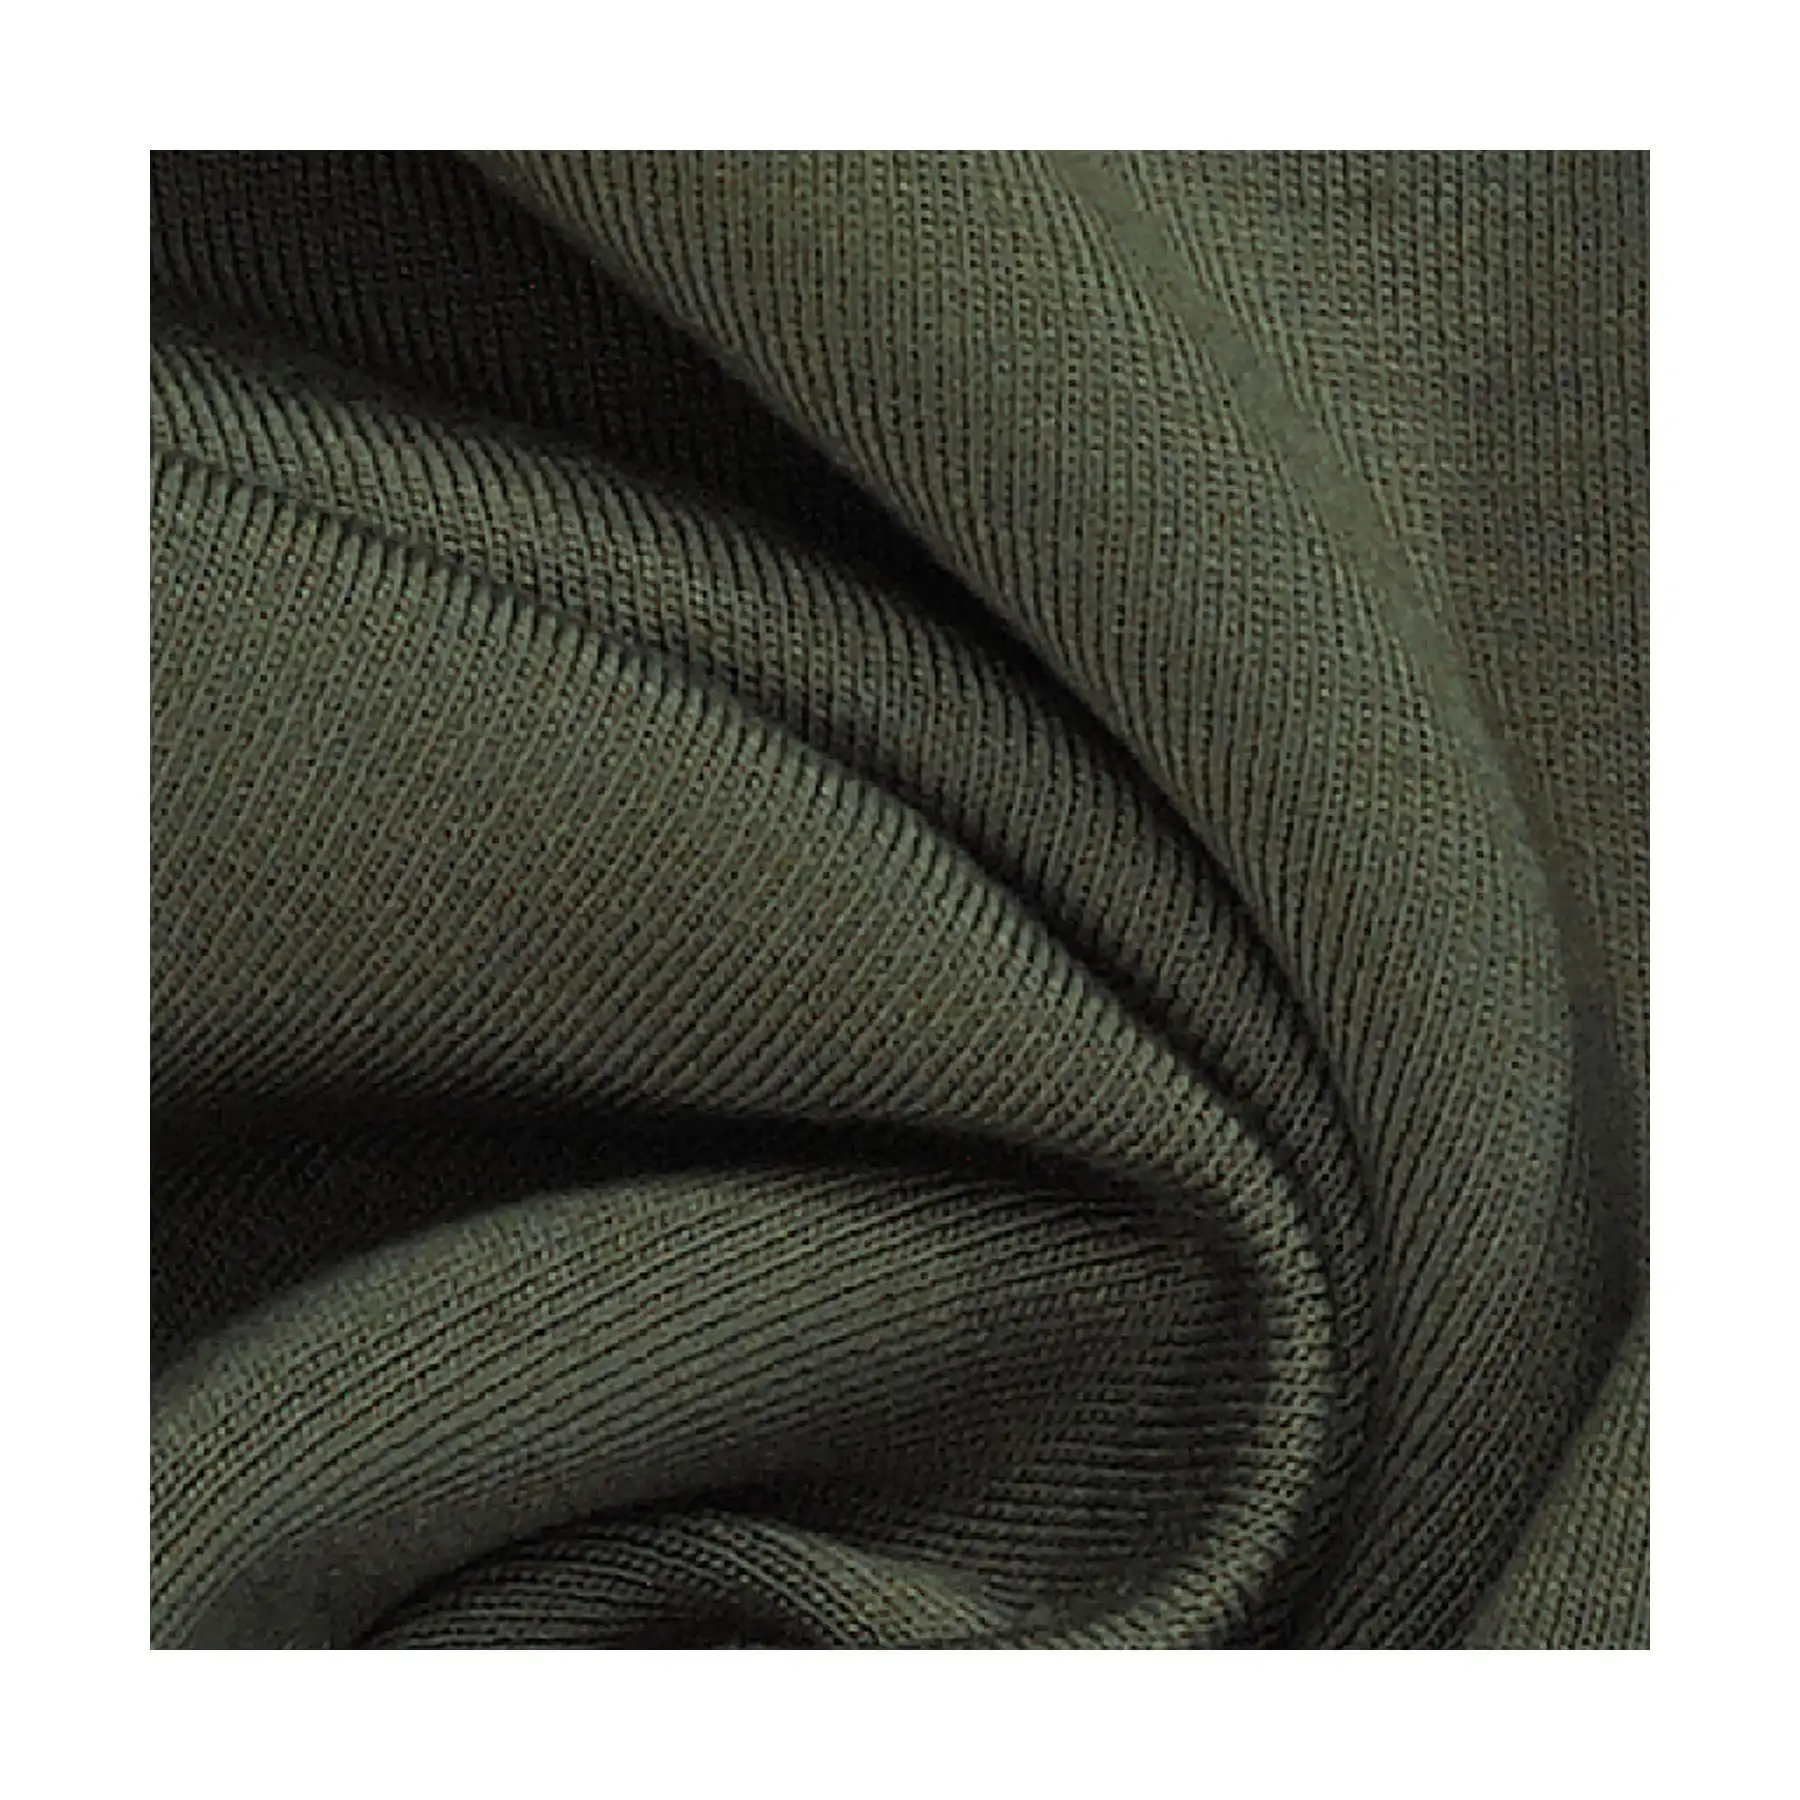 Tissu Viscose Brossé Produit Luxueux-Exceptionnellement Doux-pour une Expérience d'Artisanat Loungewear Supérieure